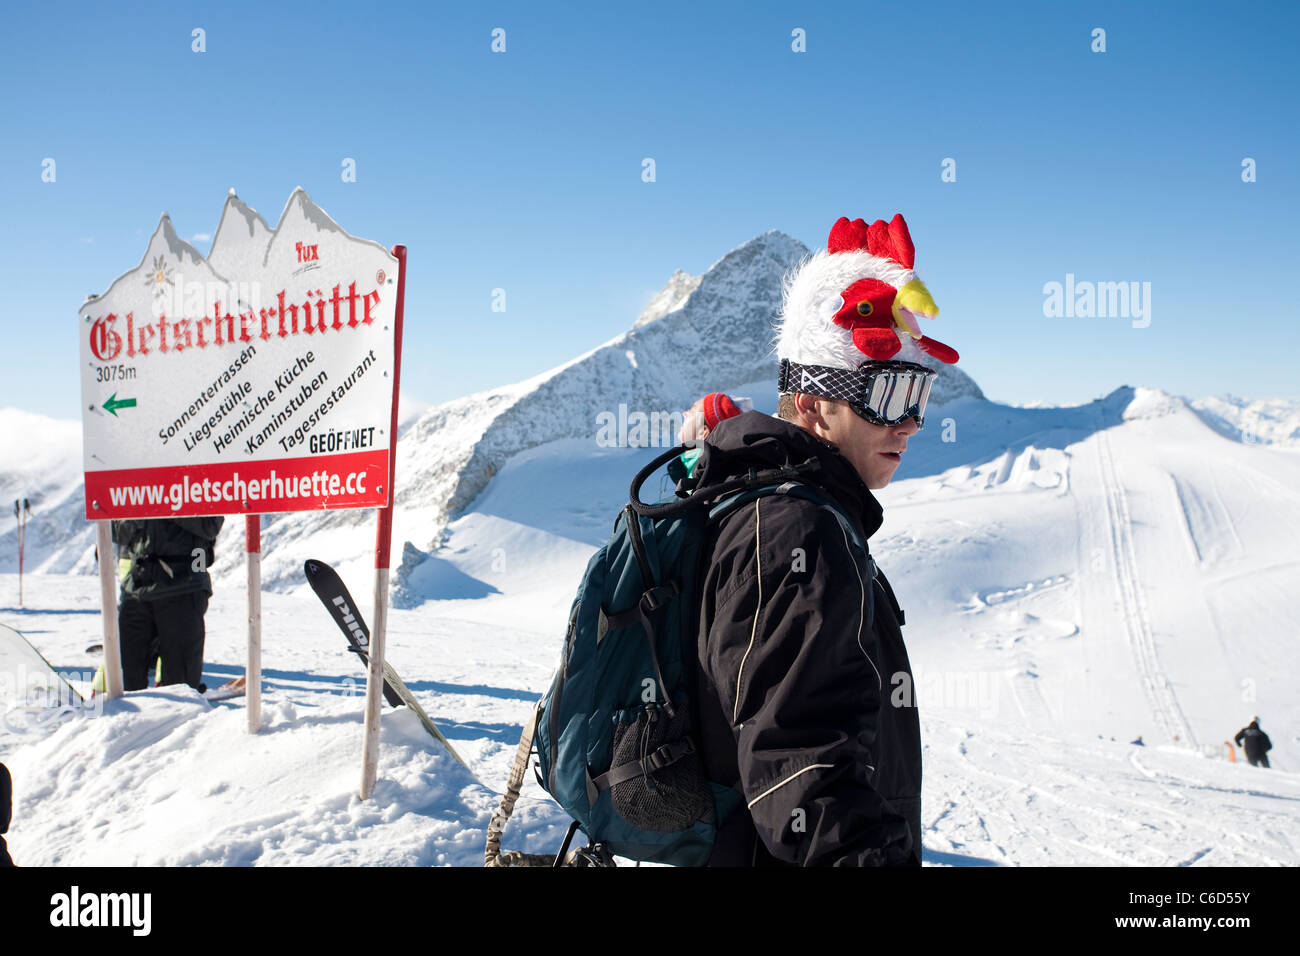 Skifahrer an der gefrorenen Wand, Gletscherhuette, Hintertuxer Gletscher, Skier at the Hintertuxer glacier Stock Photo